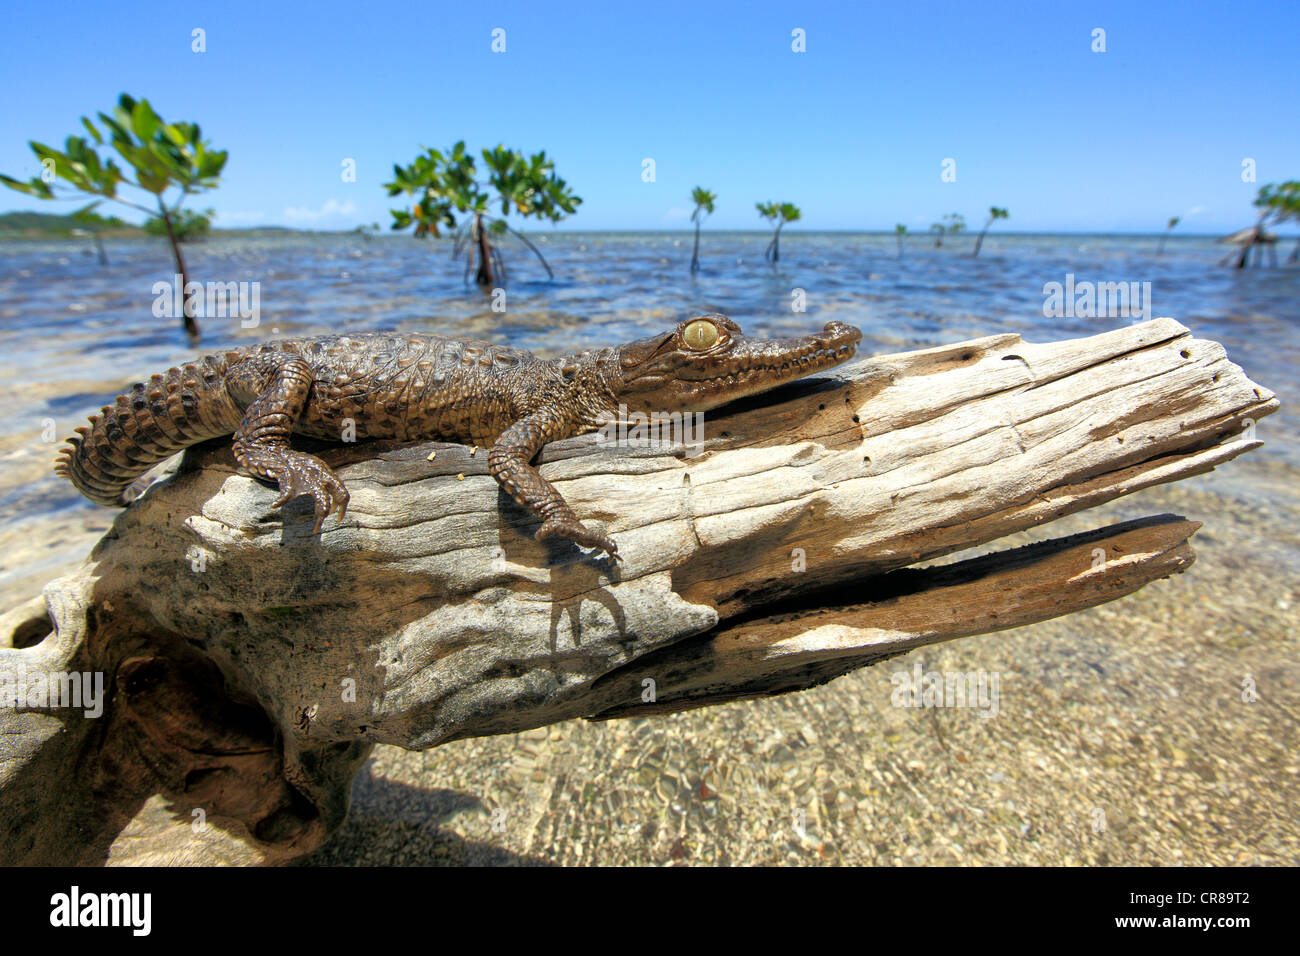 El Cocodrilo Americano (Crocodylus acutus), joven, playa, tocón de árbol, descansa, Roatán, Honduras, El Caribe, América Central Foto de stock